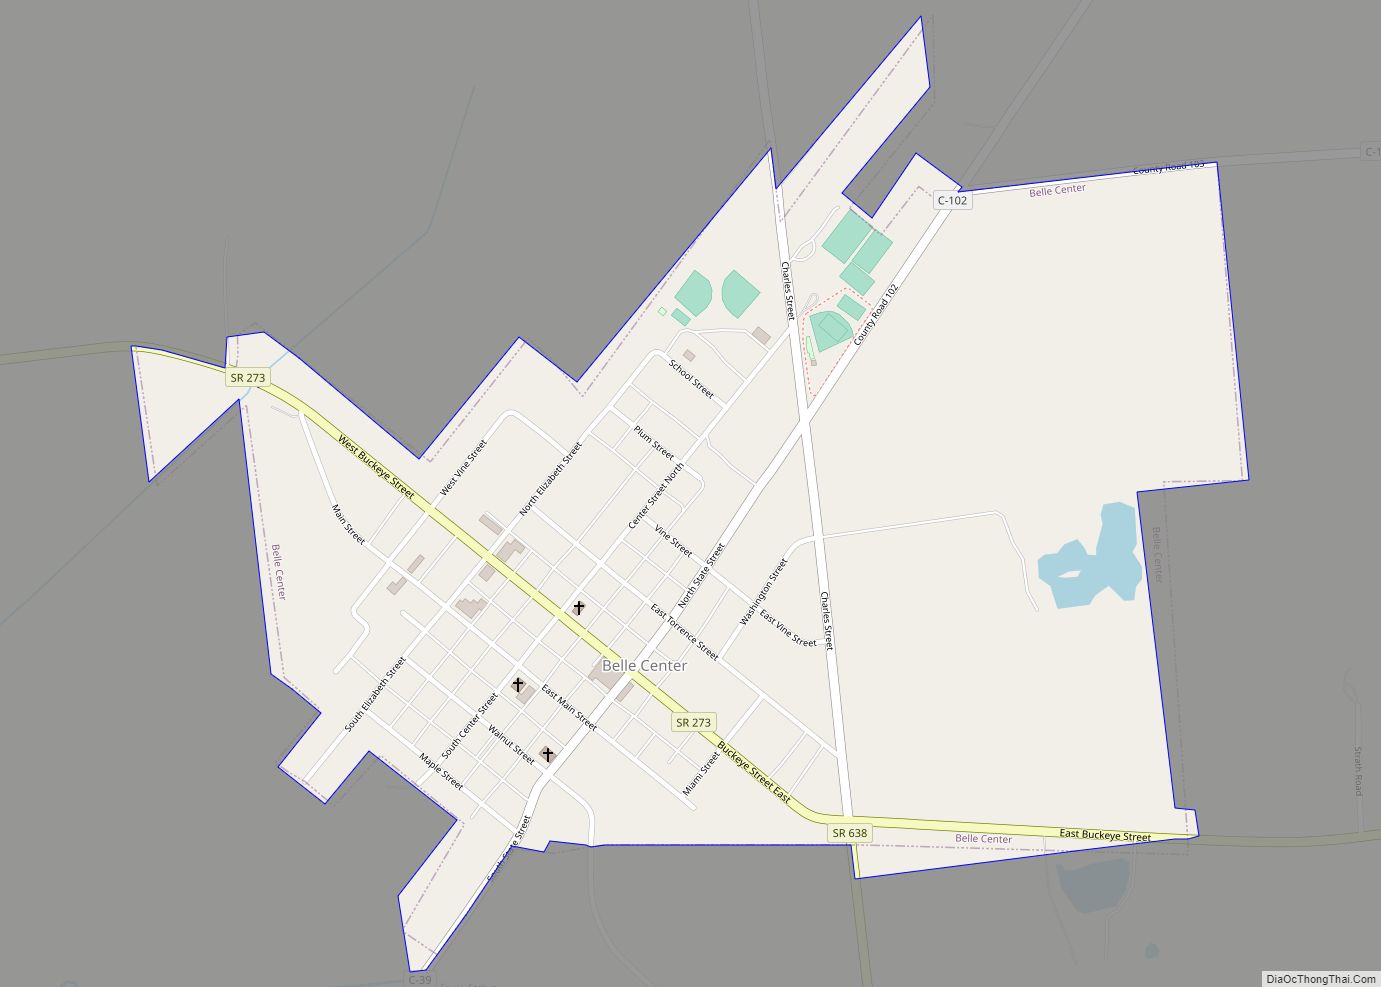 Map of Belle Center village